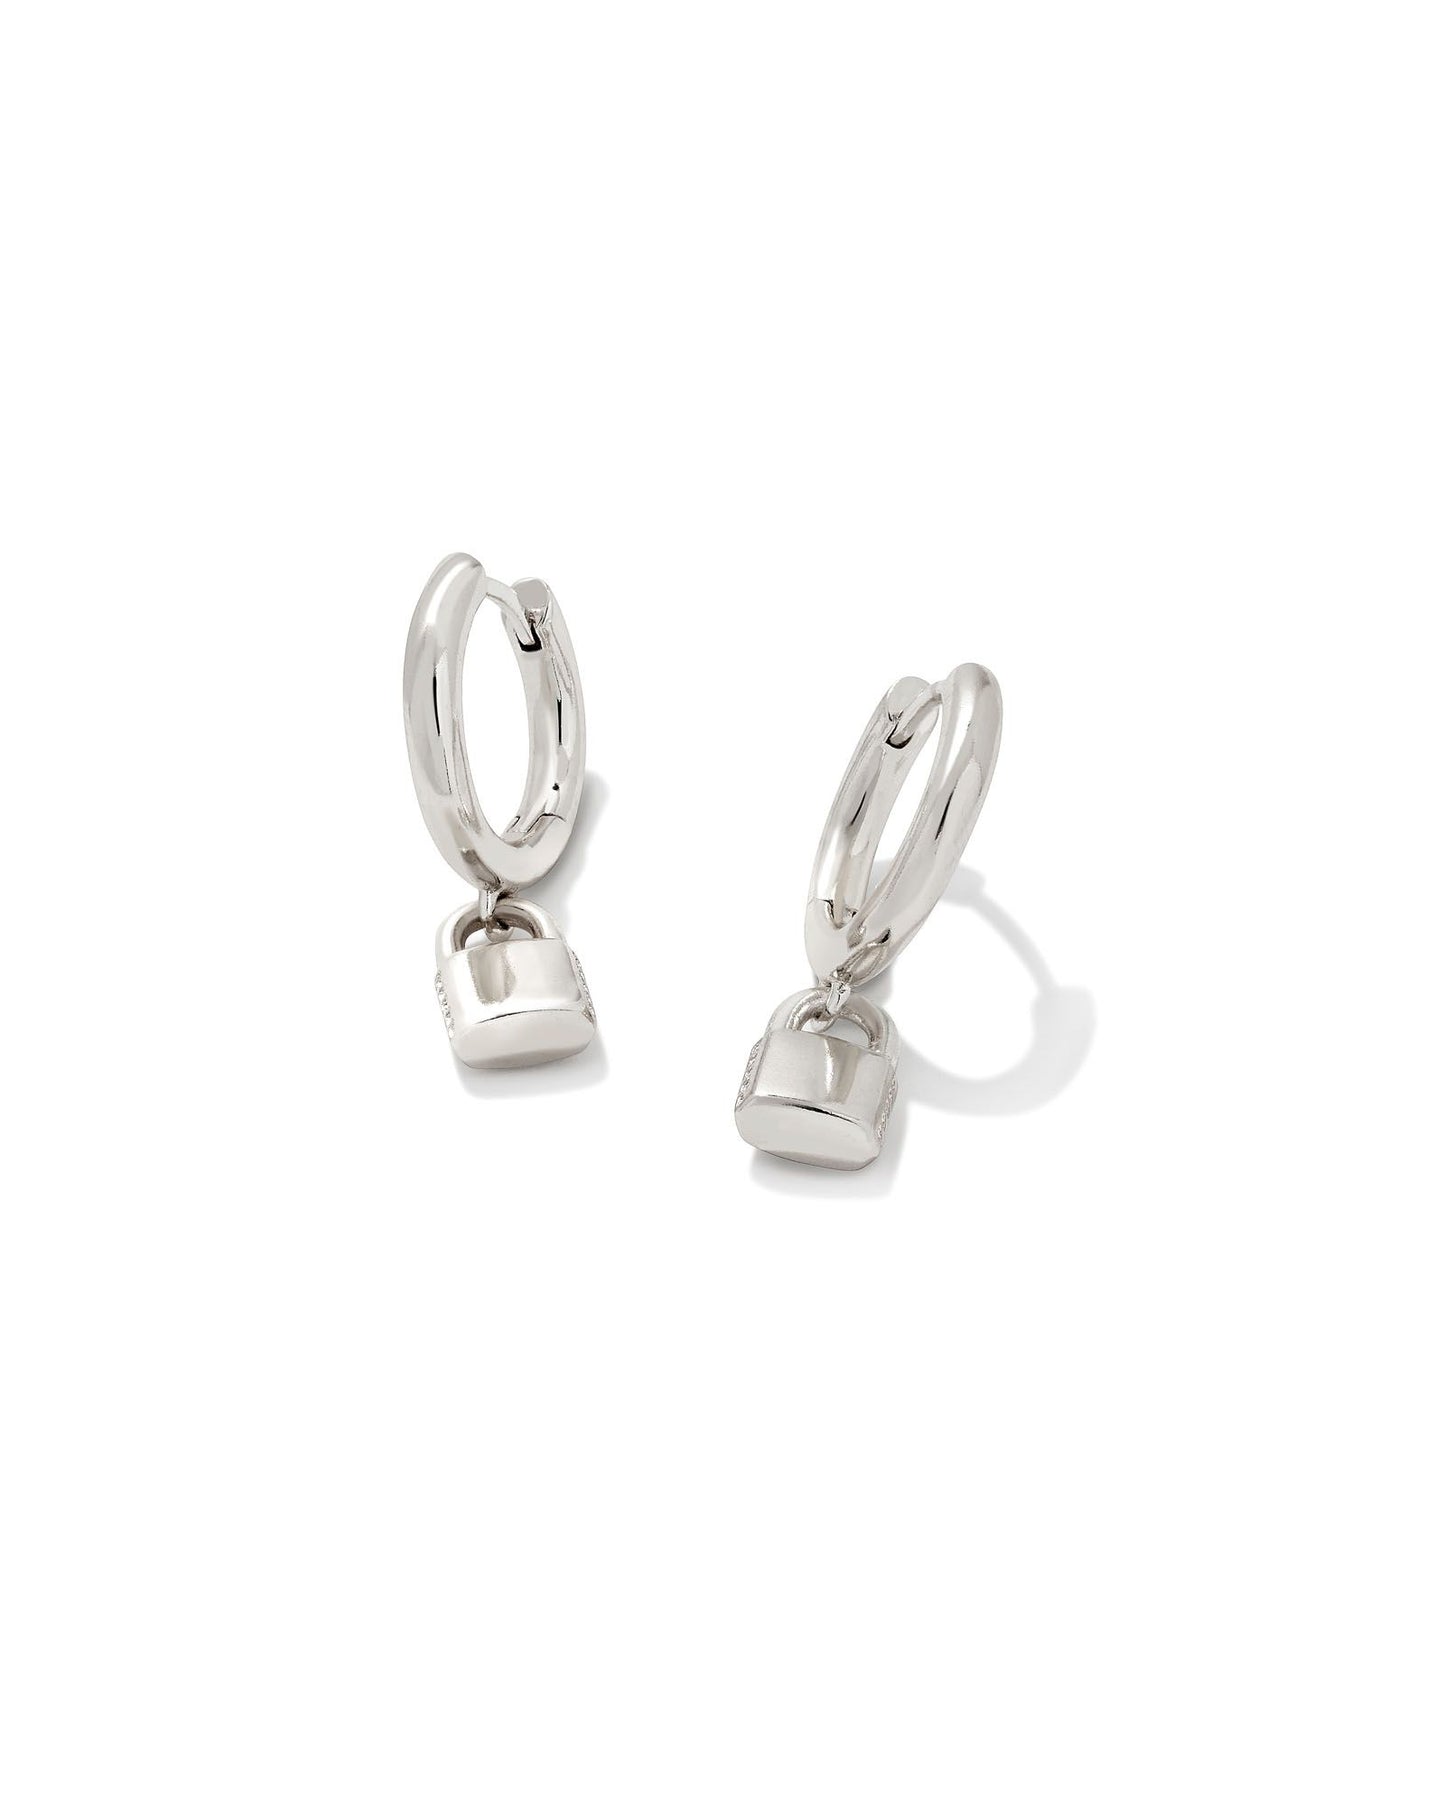 Kendra Scott Jess Lock Huggie Earrings Rhodium Metal-Earrings-Kendra Scott-E1992RHD-The Twisted Chandelier